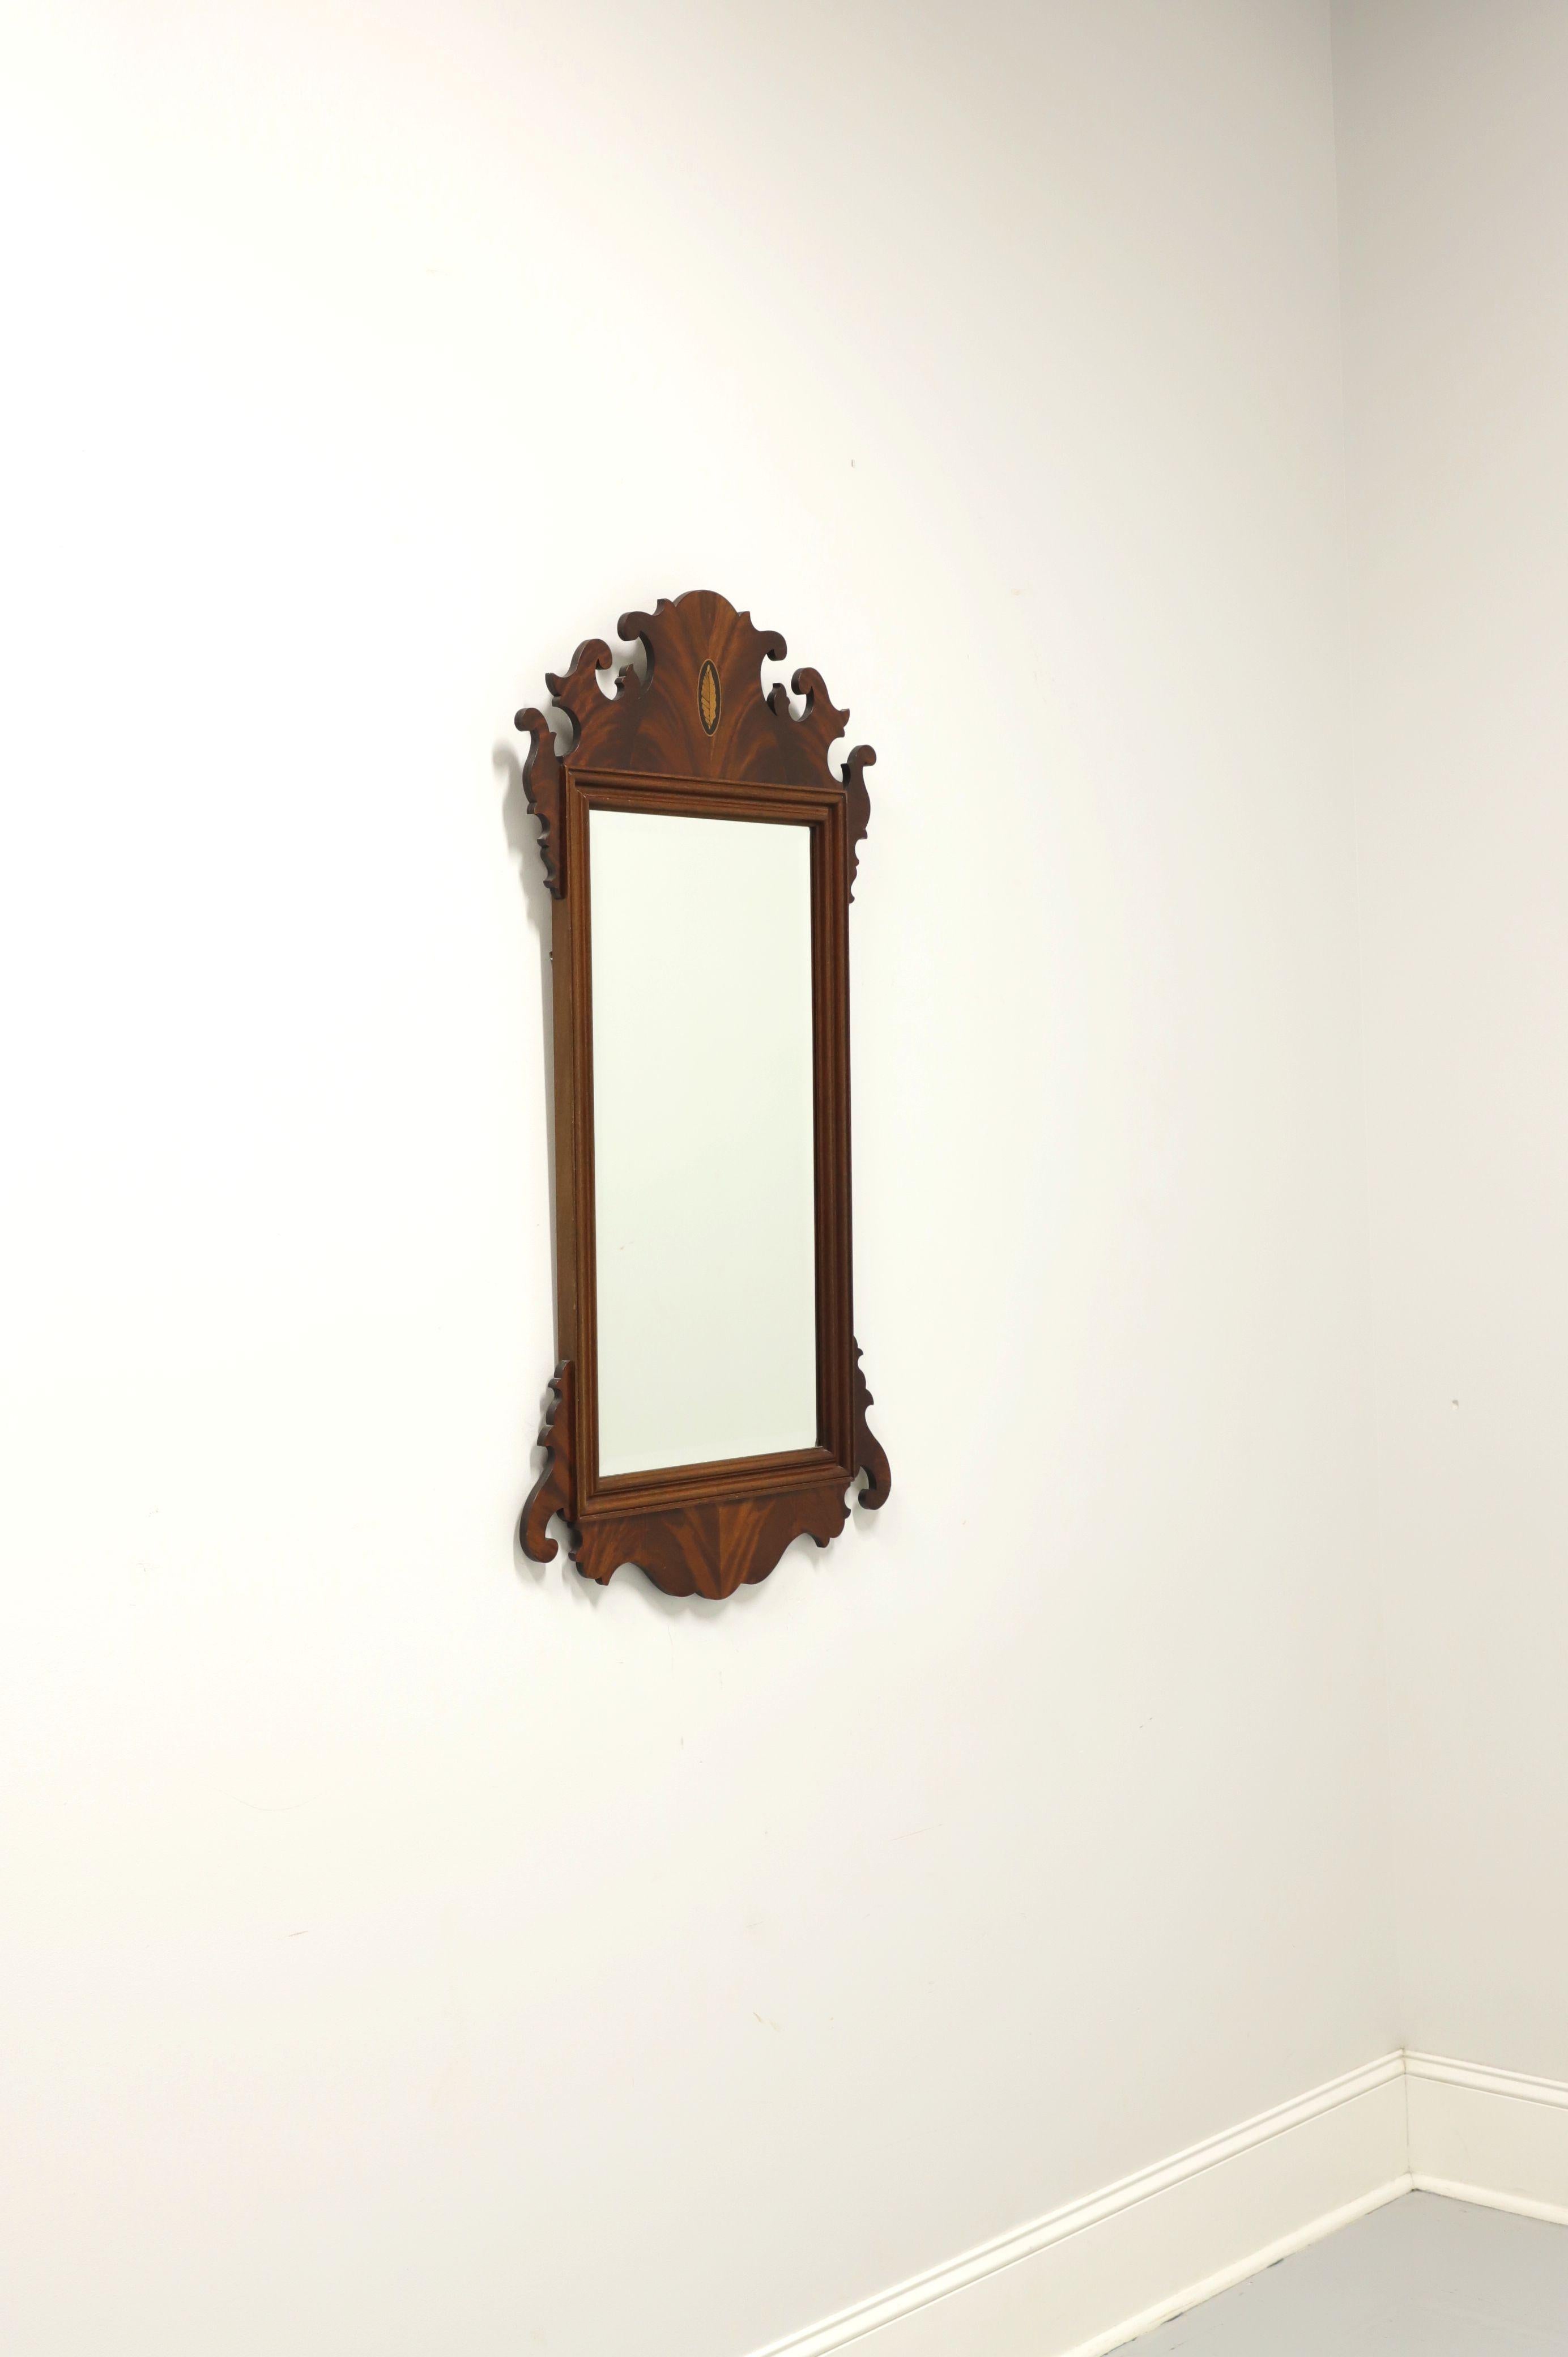 Un miroir mural de style Chippendale par Hekman. Verre miroir à bord biseauté et cadre en acajou sculpté avec un médaillon incrusté en haut au centre. Fabriqué aux États-Unis, à la fin du 20e siècle. 

Style # : 5-158

Mesures : 22W 1.25D